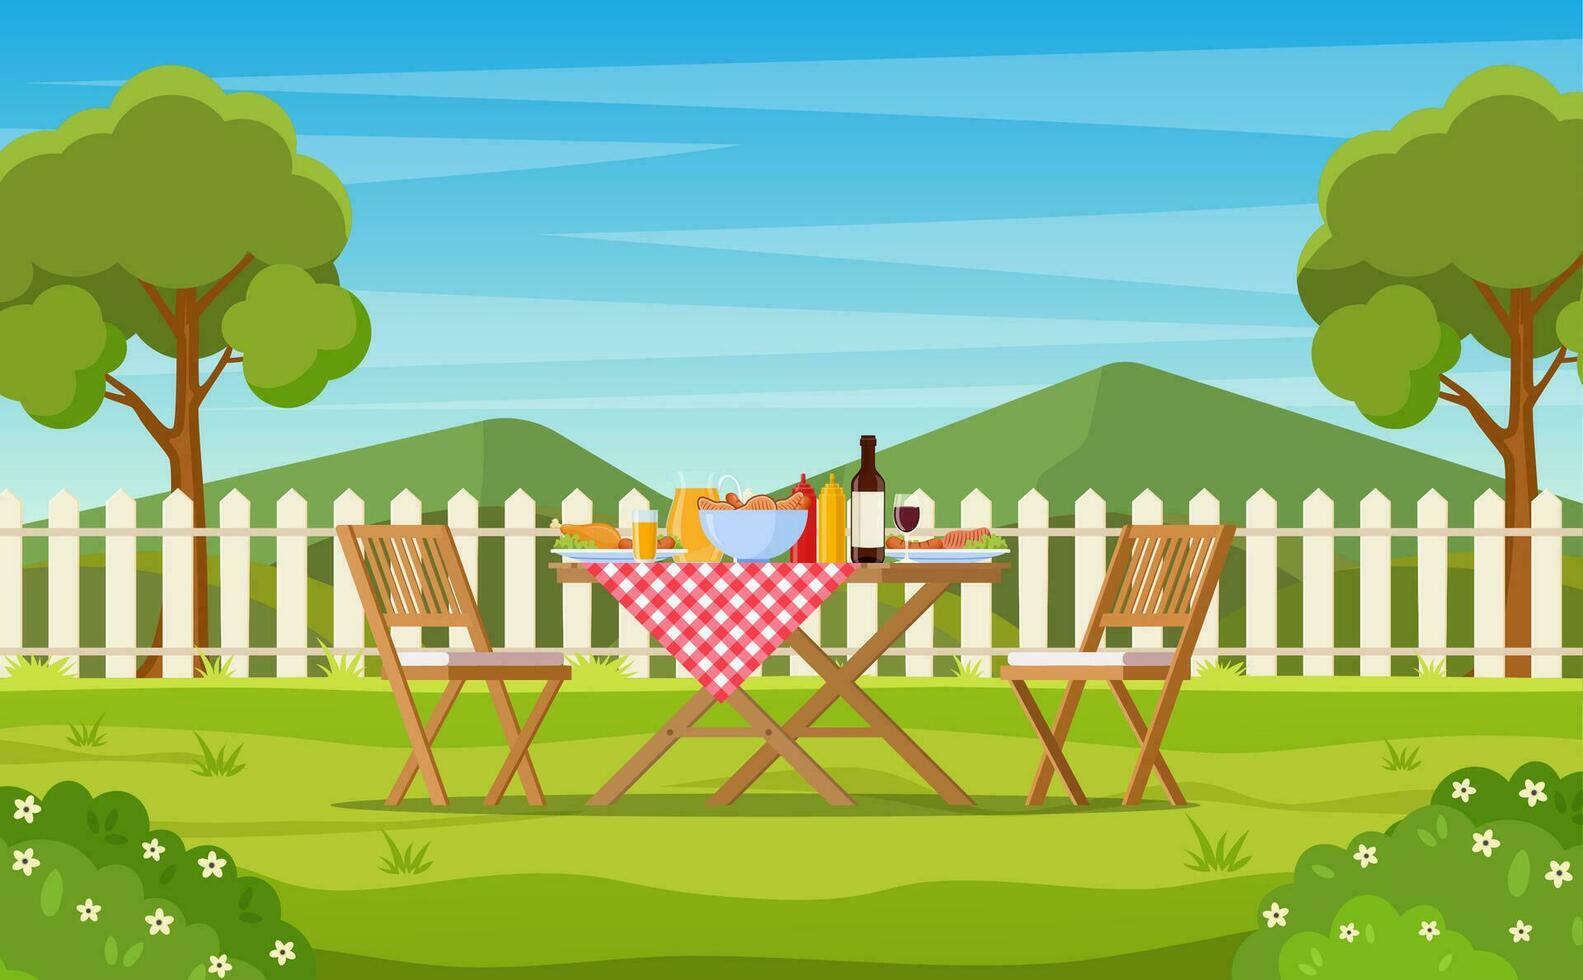 barbecue partij in de achtertuin met schutting, bomen, struiken. picknick met barbecue Aan zomer gazon in park of tuin voedsel Aan tafel, stoelen. vector illustratie in vlak ontwerp